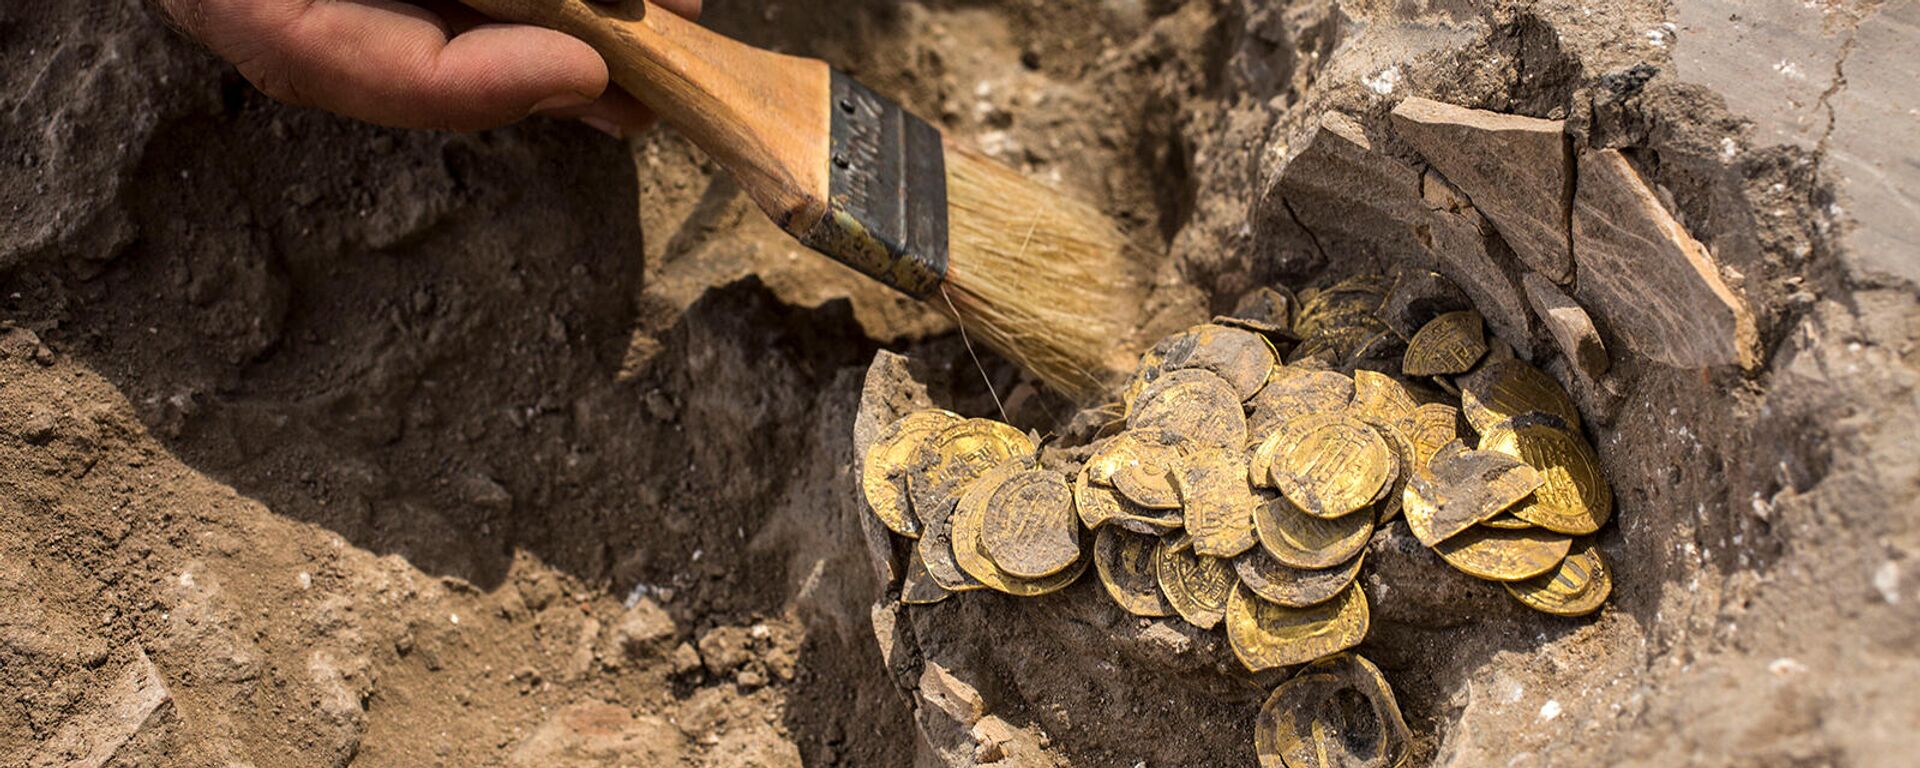 Археолог очищает обнаруженные на месте раскопок золотые монеты (18 августа 2020). Израиль - Sputnik Армения, 1920, 09.11.2021